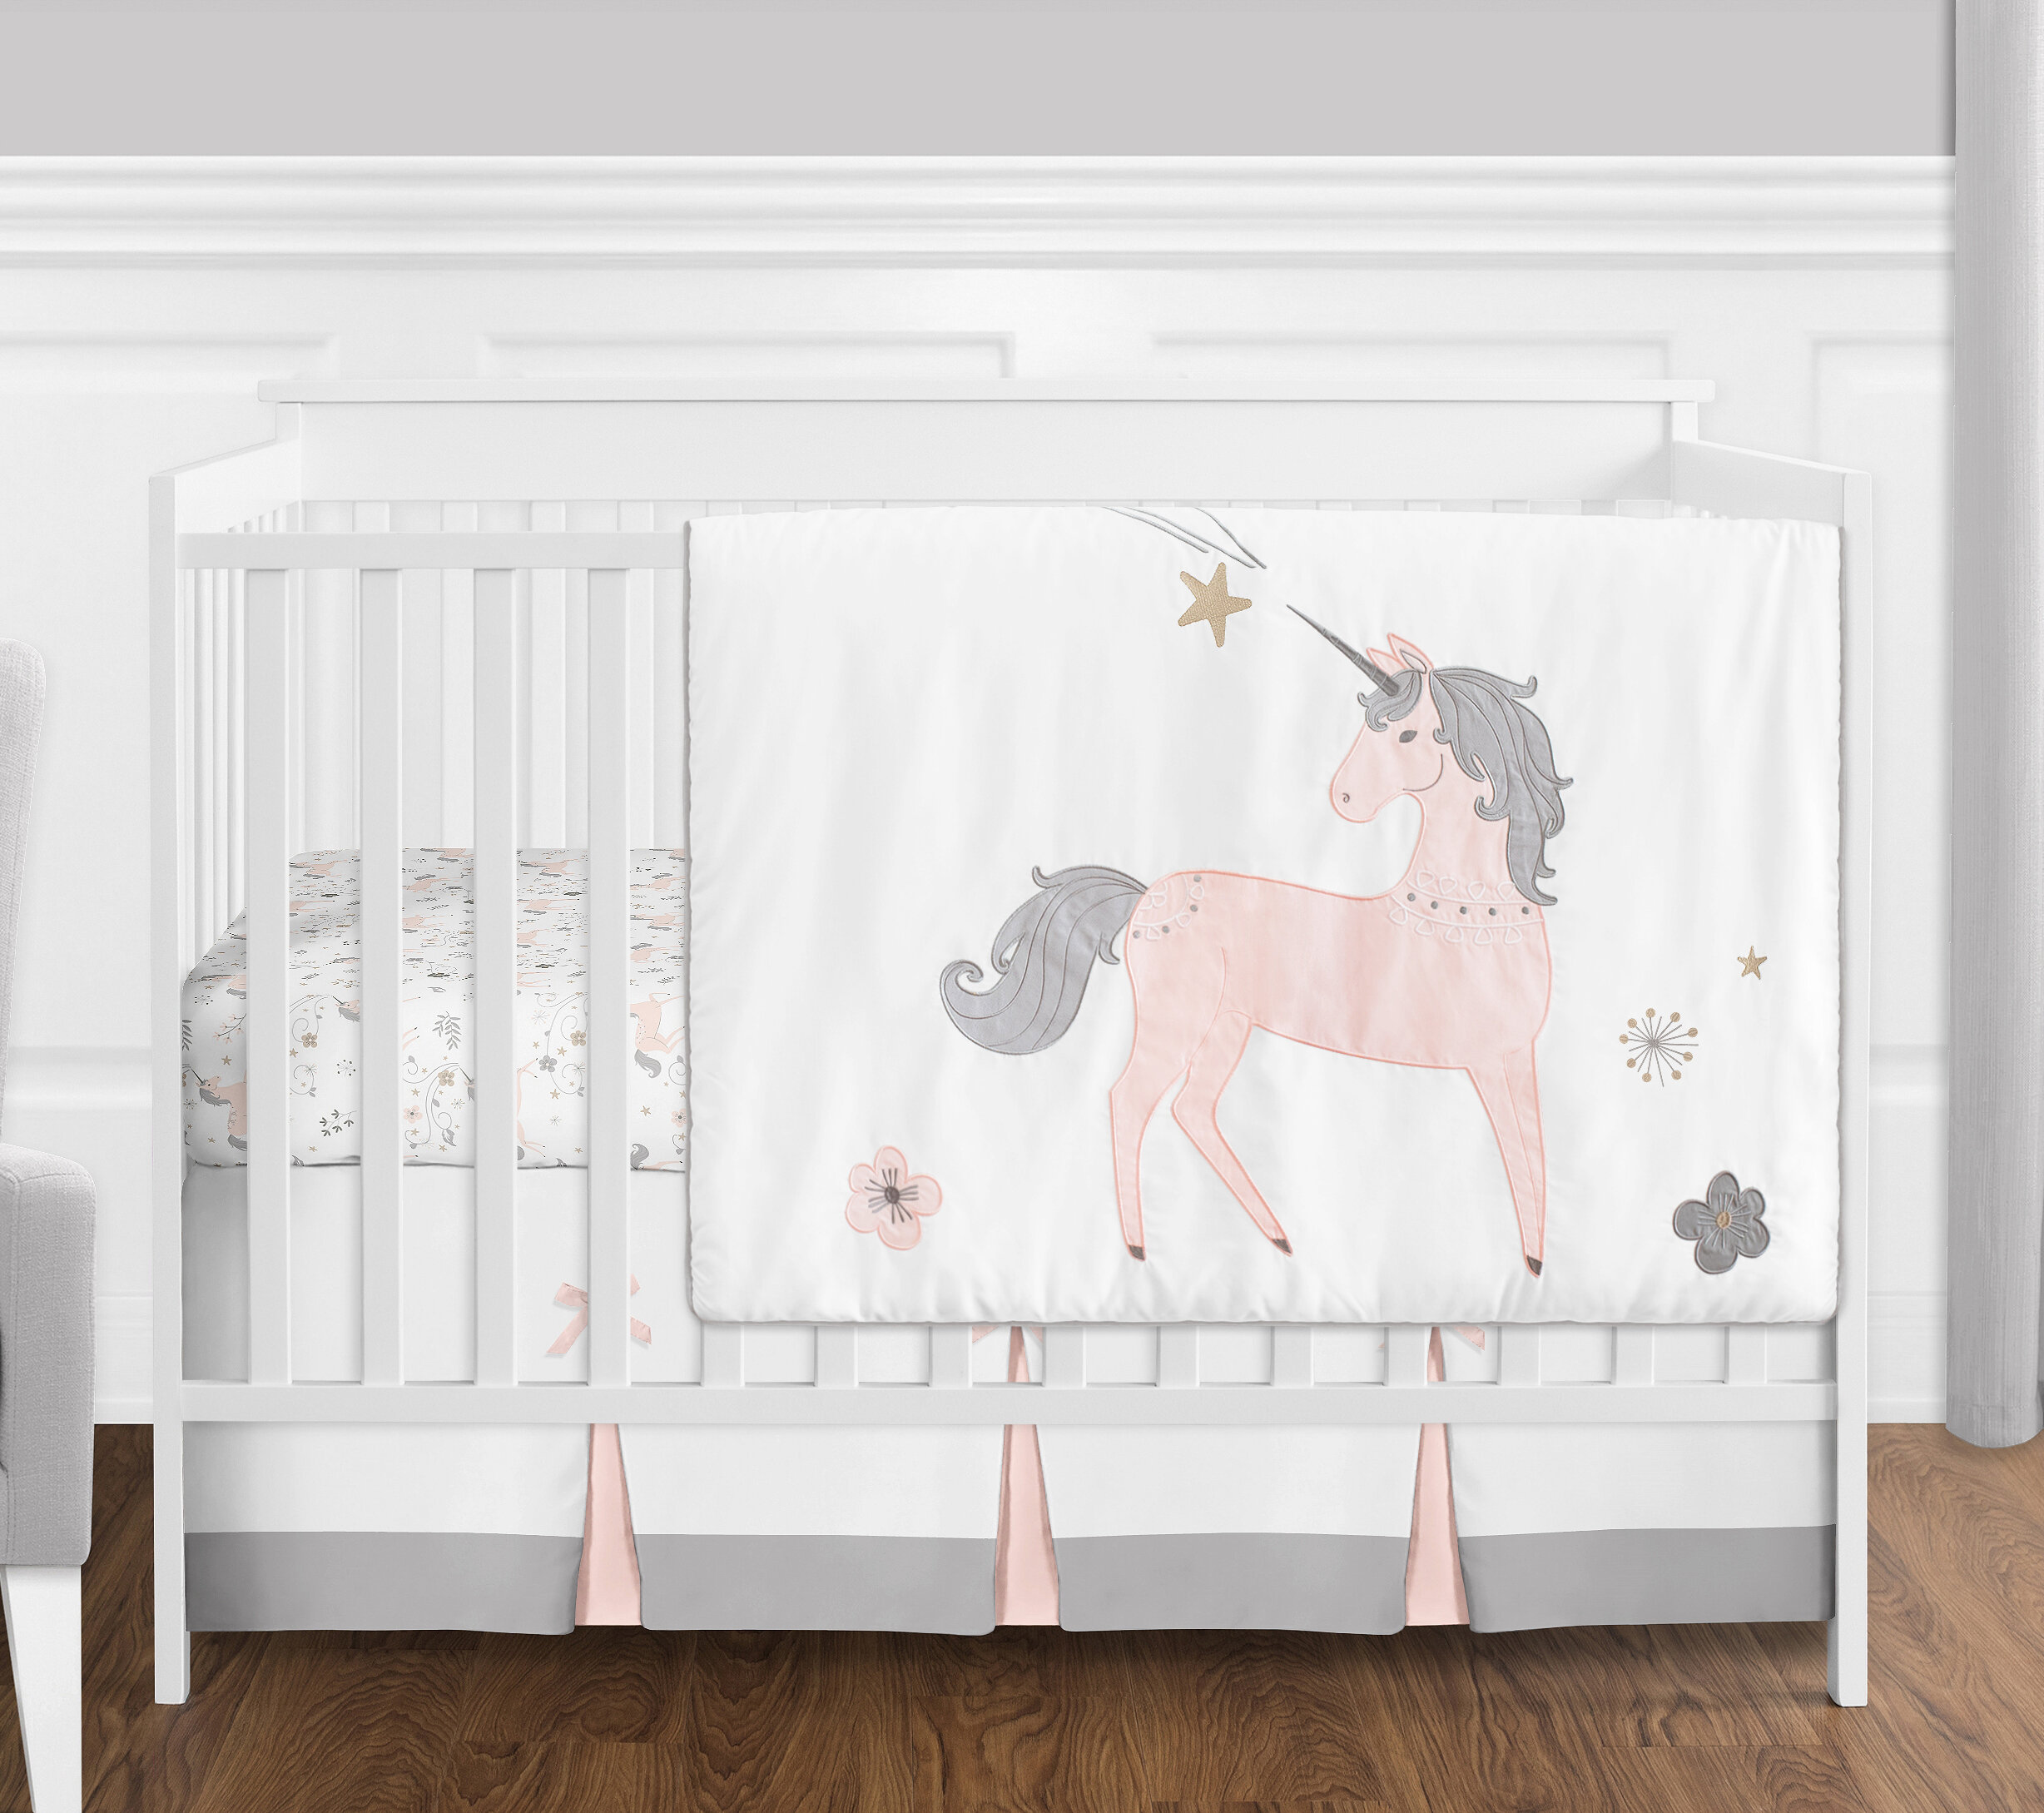 unicorn infant bedding